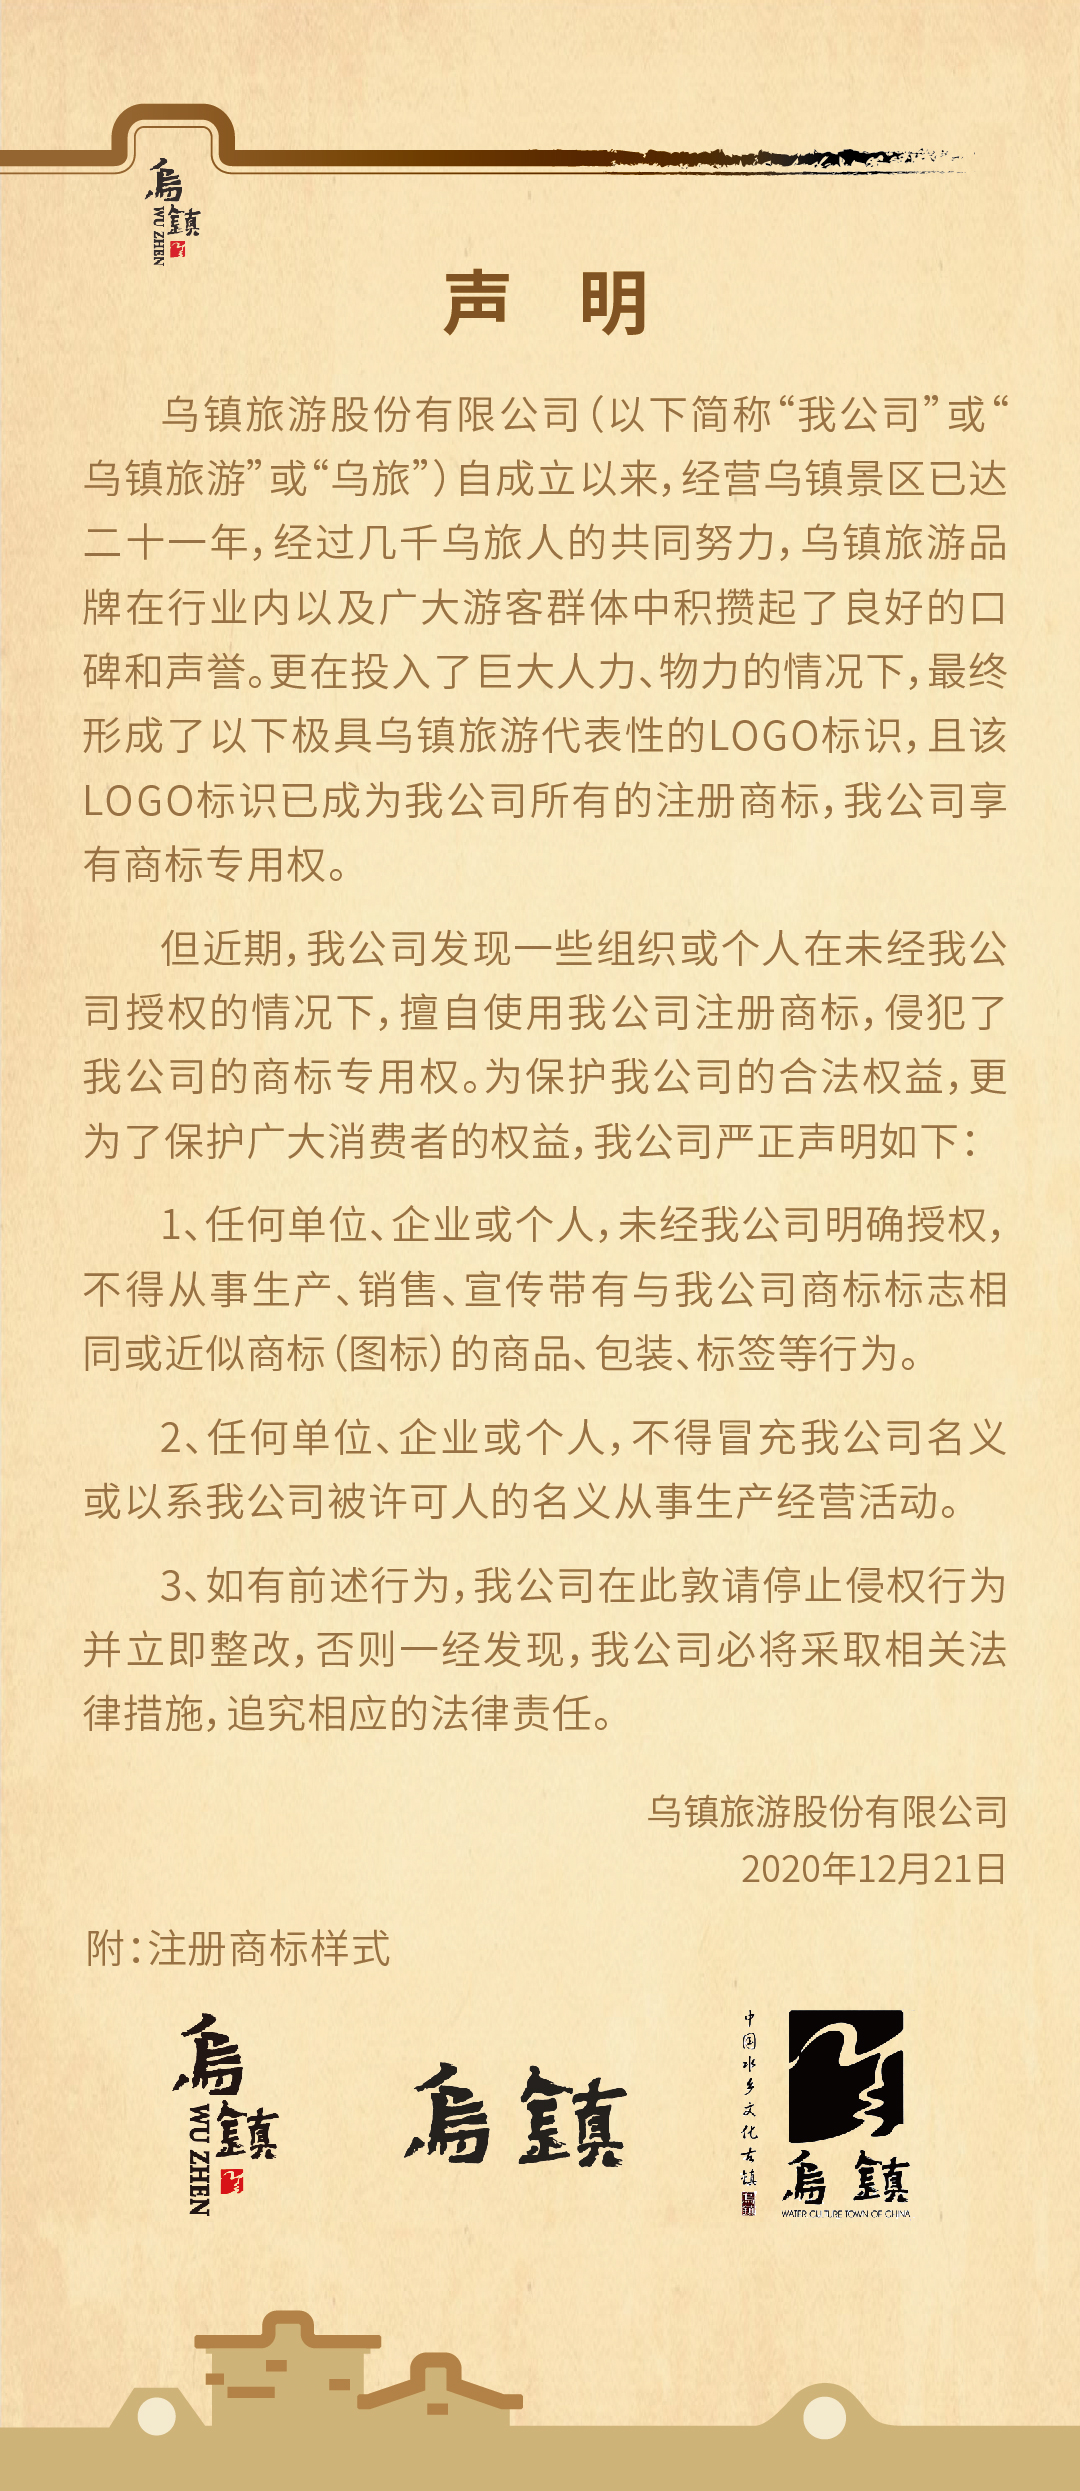 WeChat Image_20201221110556.jpg